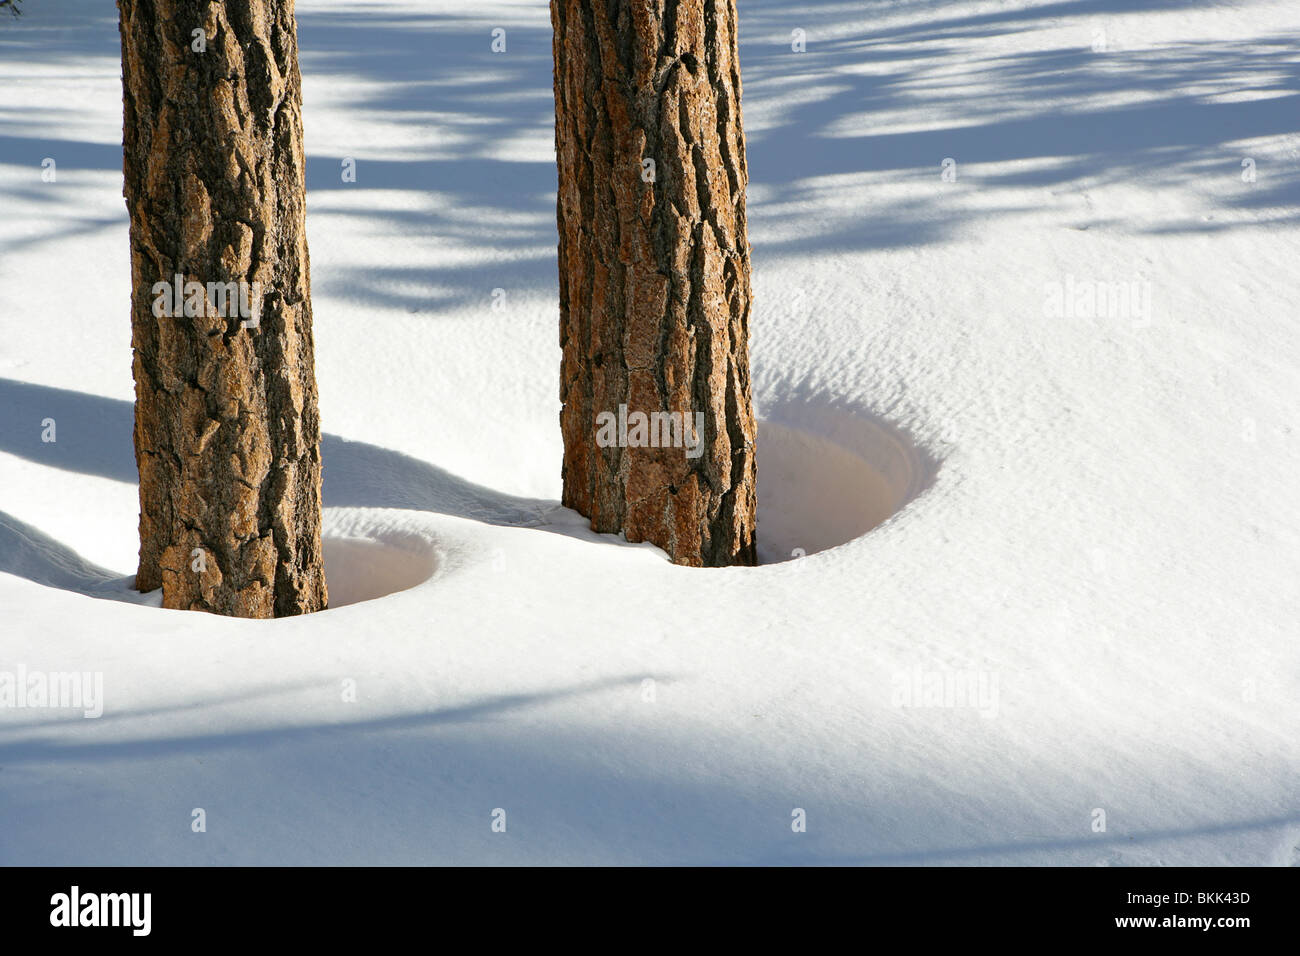 Baum-Stämme in einer Schneeverwehung Stockfoto